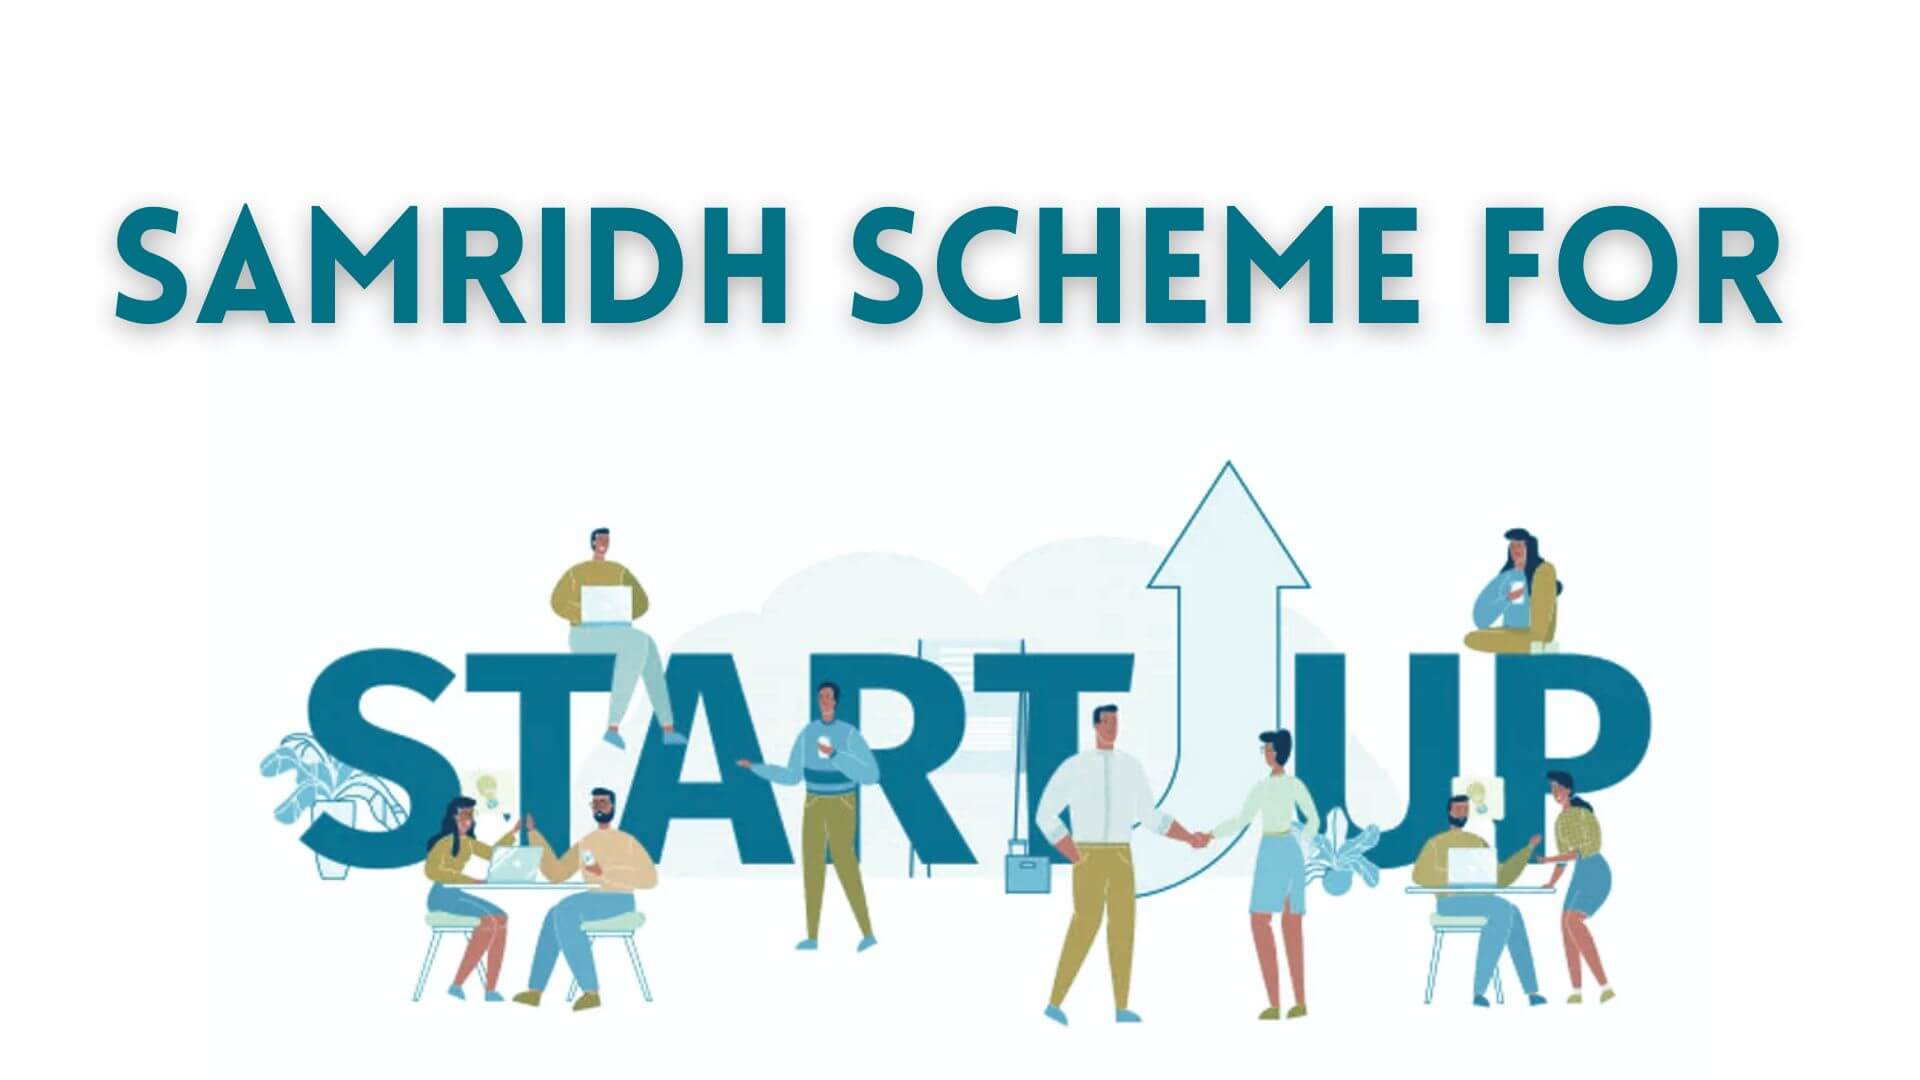 Samridh Scheme for Startup